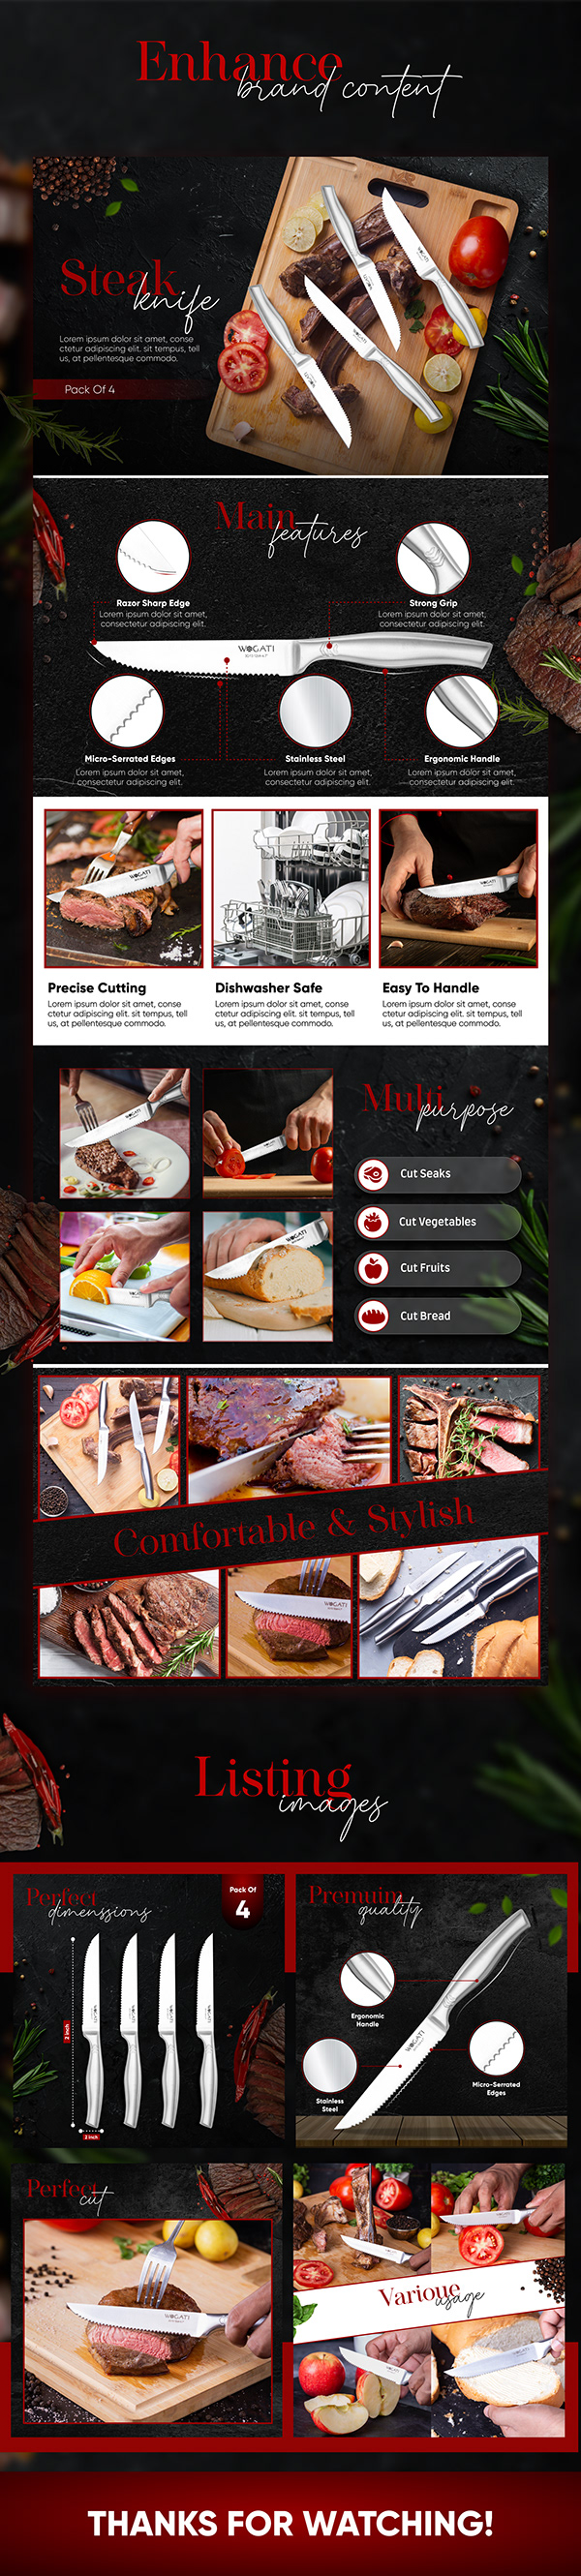 Amazon listing Images | A+ Content Design |Steak Knifes